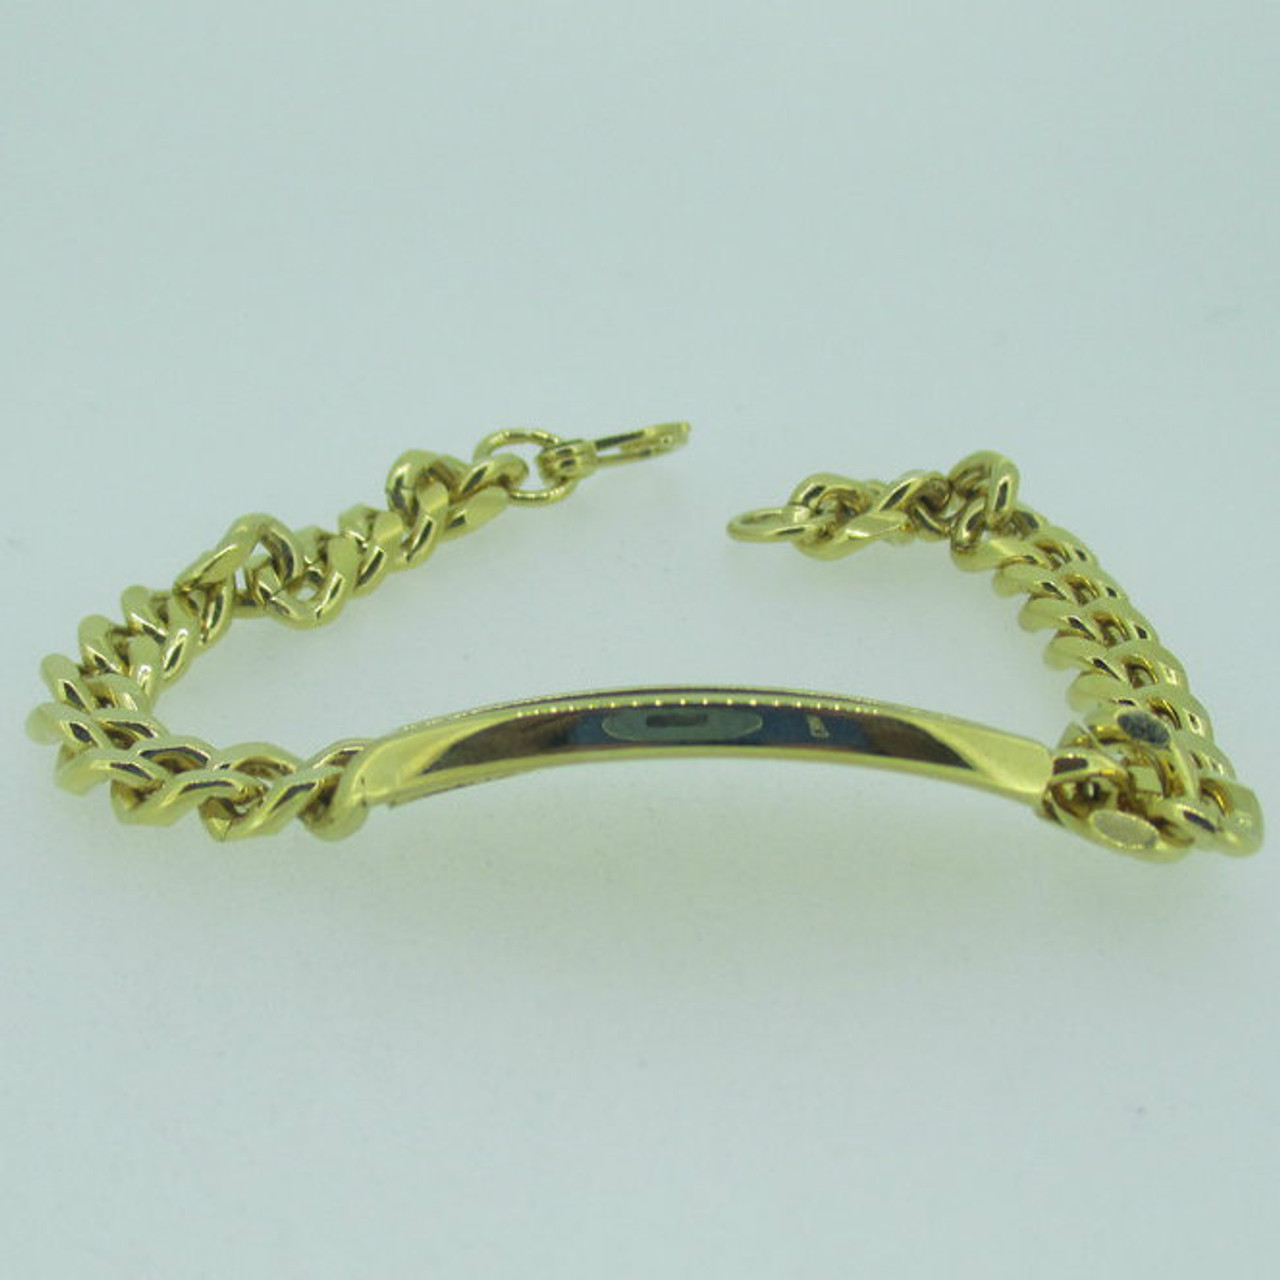 Speidel Gold Men's ID Bracelet